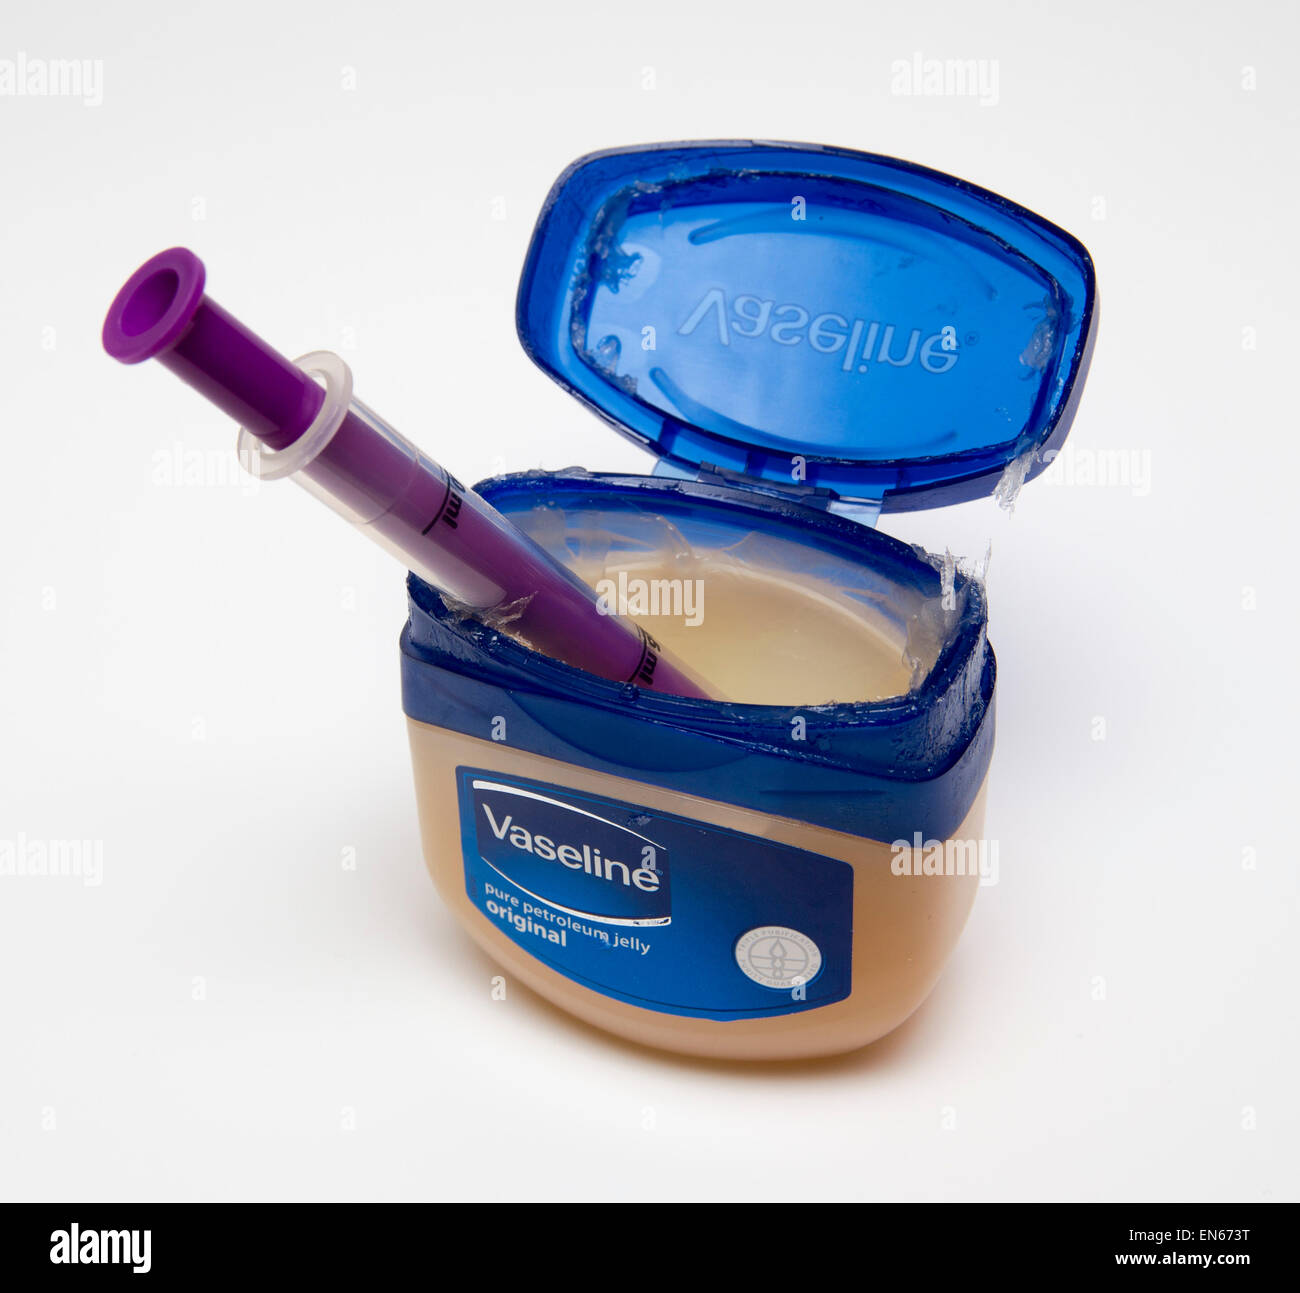 tub of Vaseline petroleum jelly containing a syringe, isolated on white background. Stock Photo